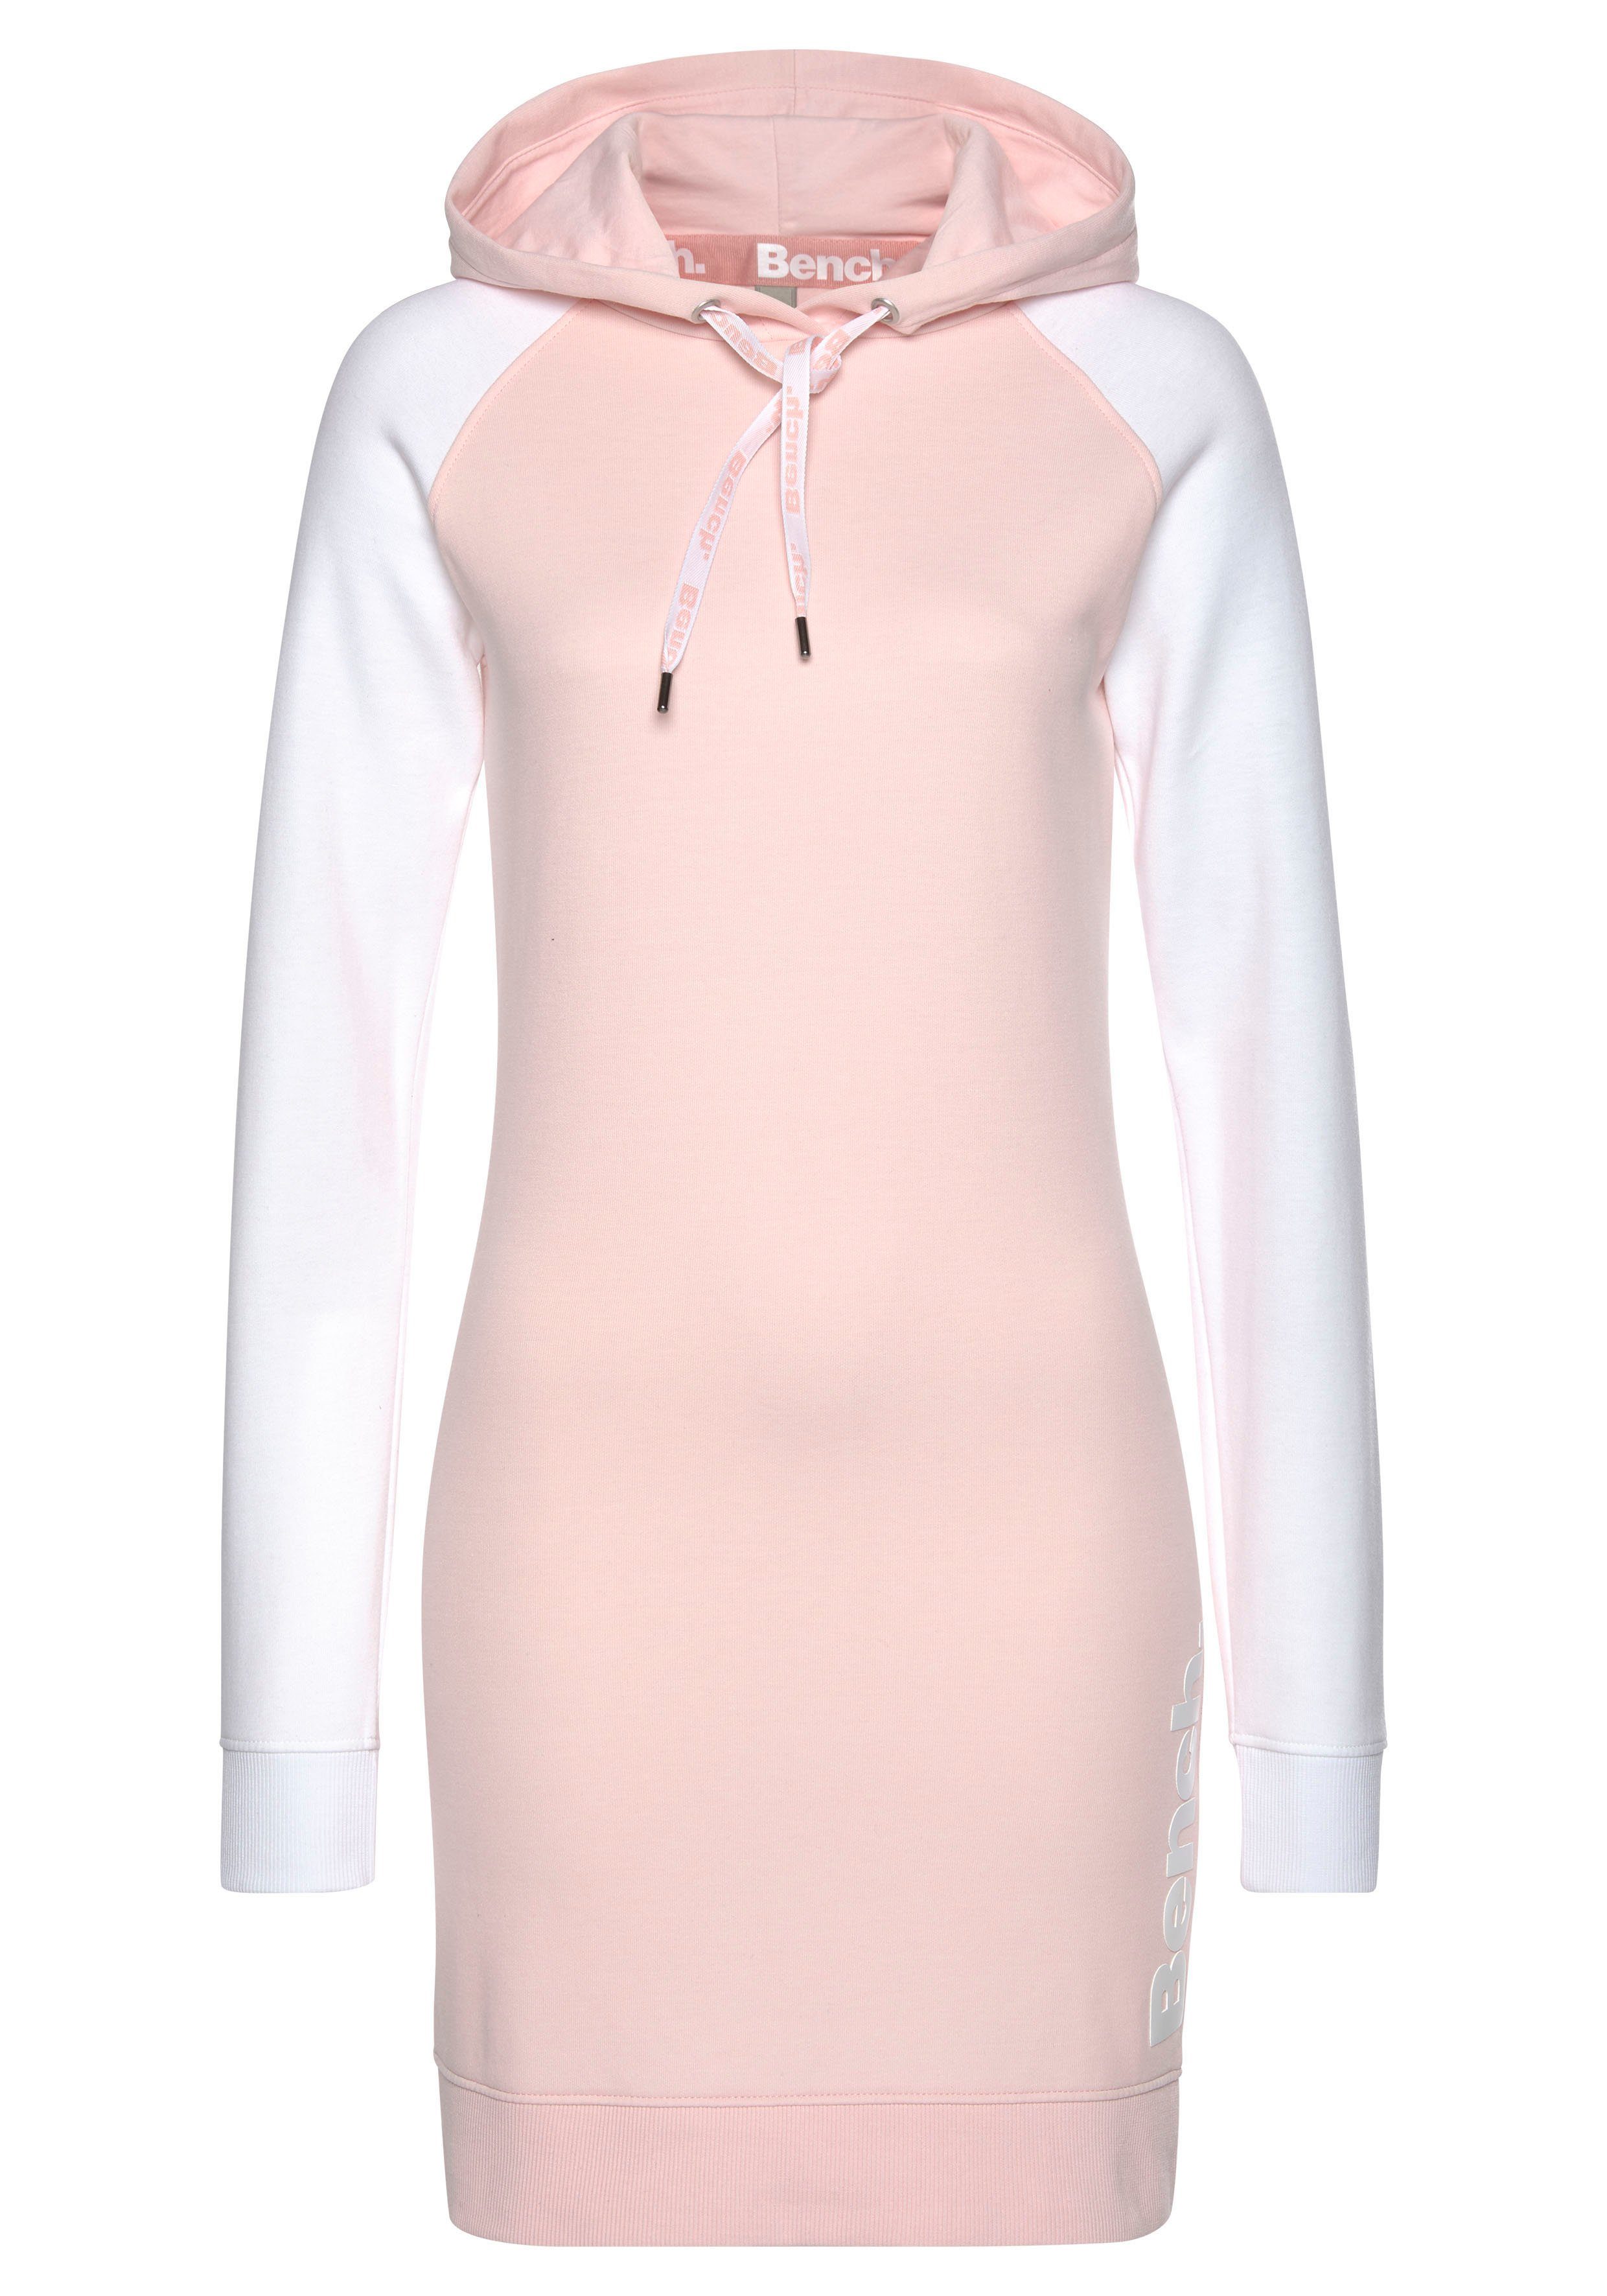 und Bench. Sweatkleid weiß-rosa Kapuze abgesetzten Loungewear farblich Ärmeln mit